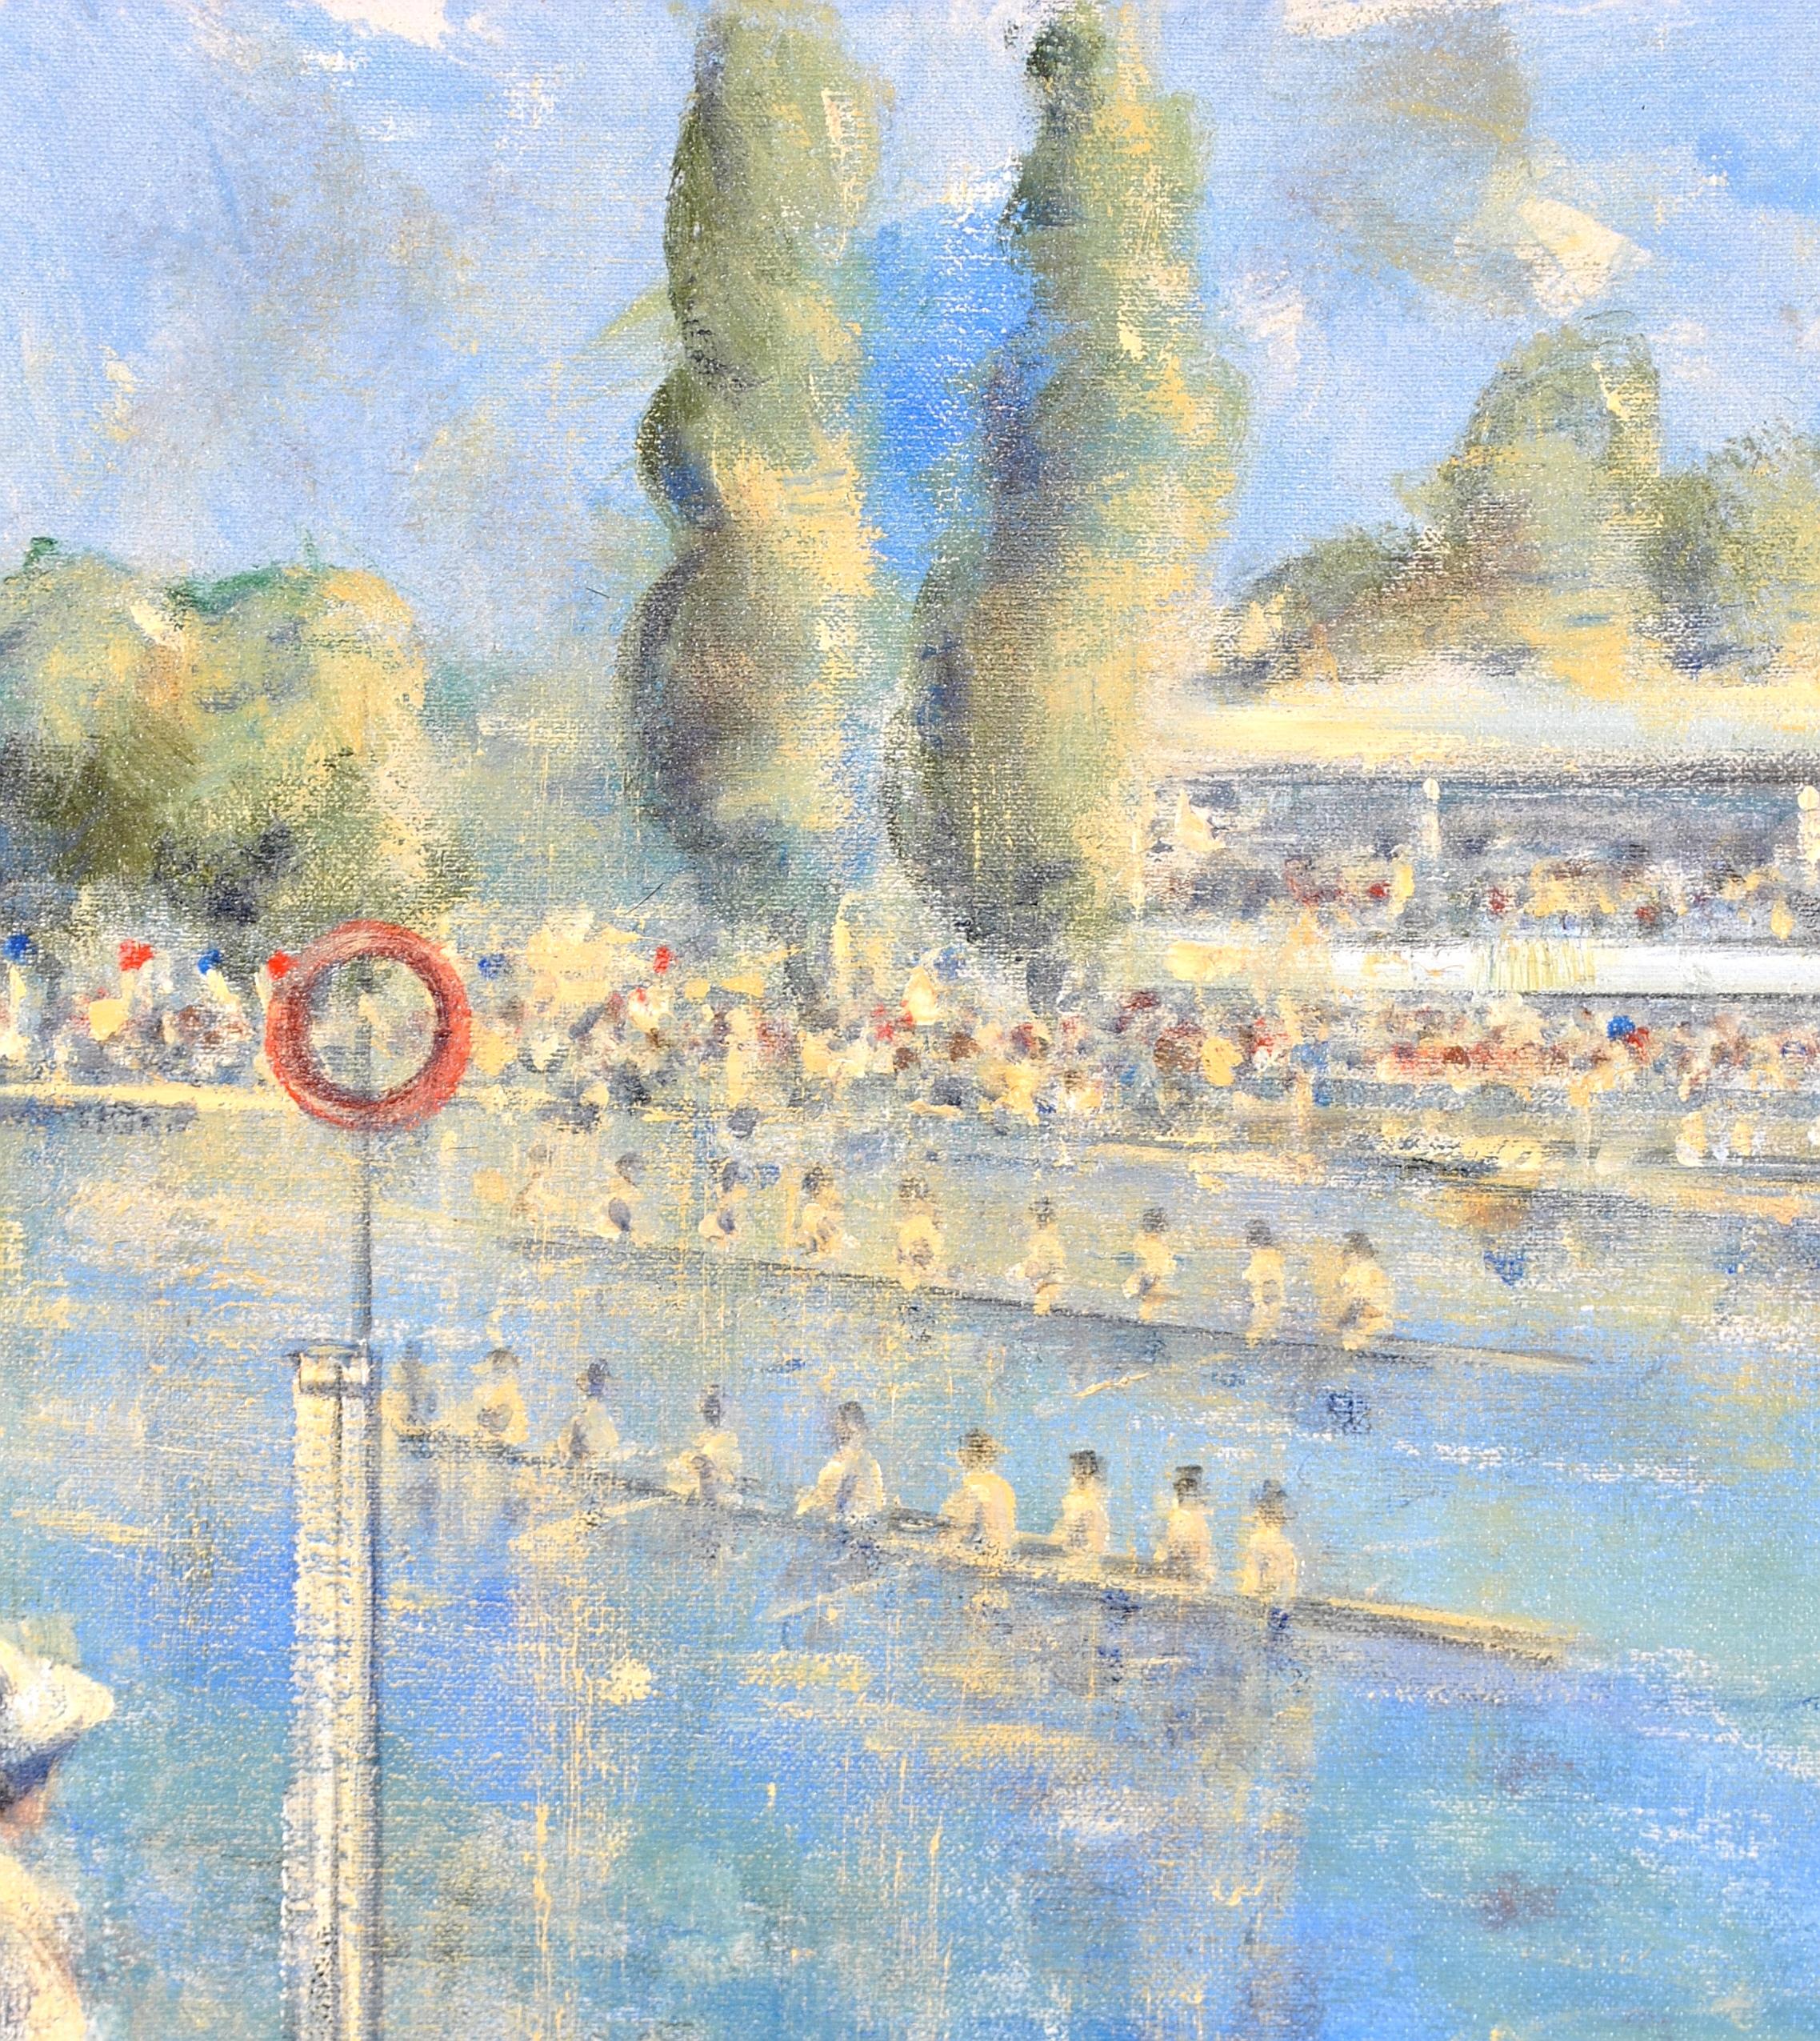 Eine schöne 20. Jahrhundert Öl auf Leinwand Bord von der sehr beliebten englischen impressionistischen Künstler Walter John Beauvais. Das Werk zeigt mondäne Damen am Ziel einer Ruderregatta, mit zwei Mannschaften vor einem Pavillon.

Diese